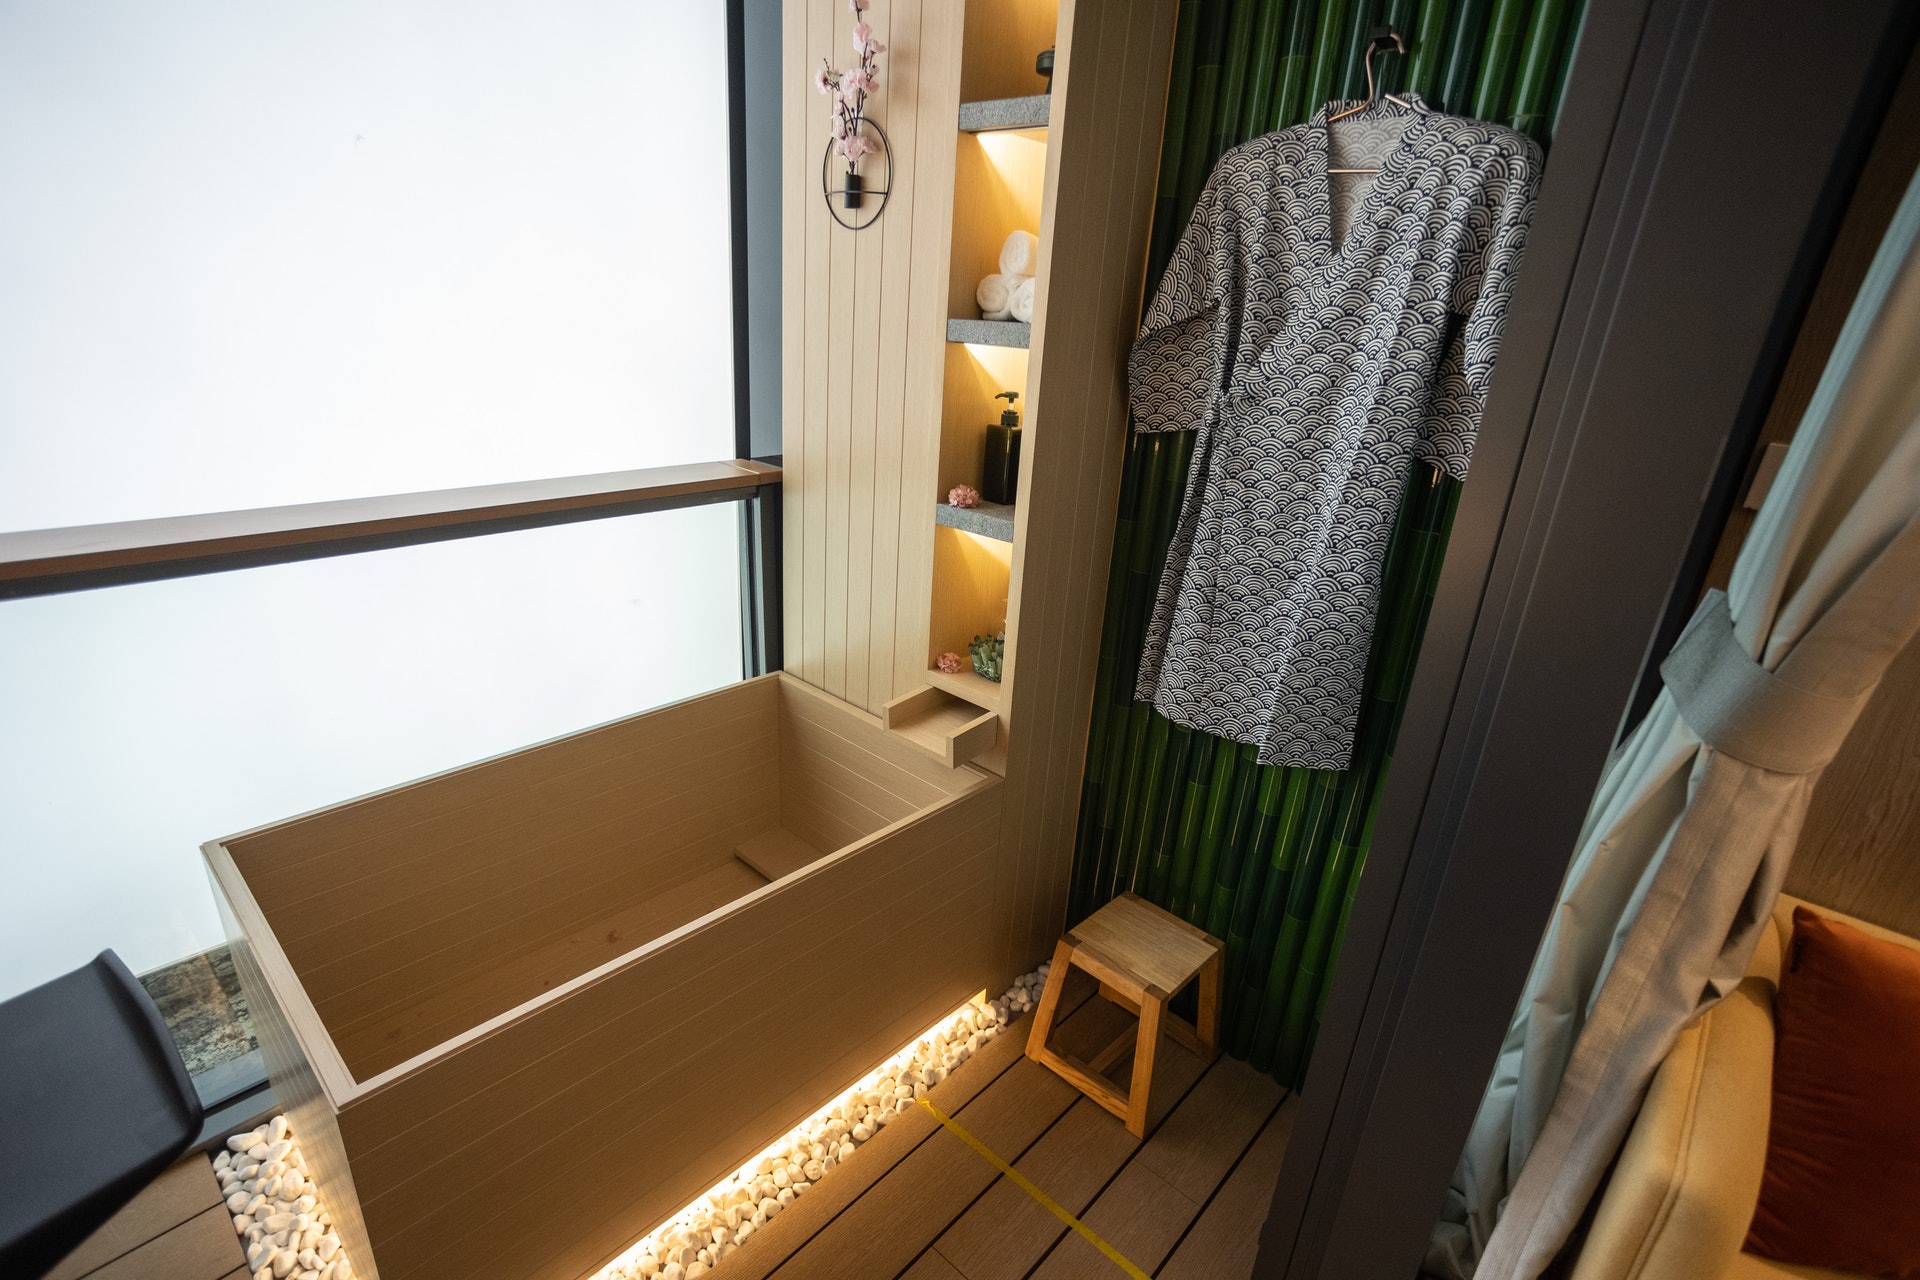 露台原先放置洗衣機的位置，在示範單位中改放日式風呂。（廖雁雄攝）